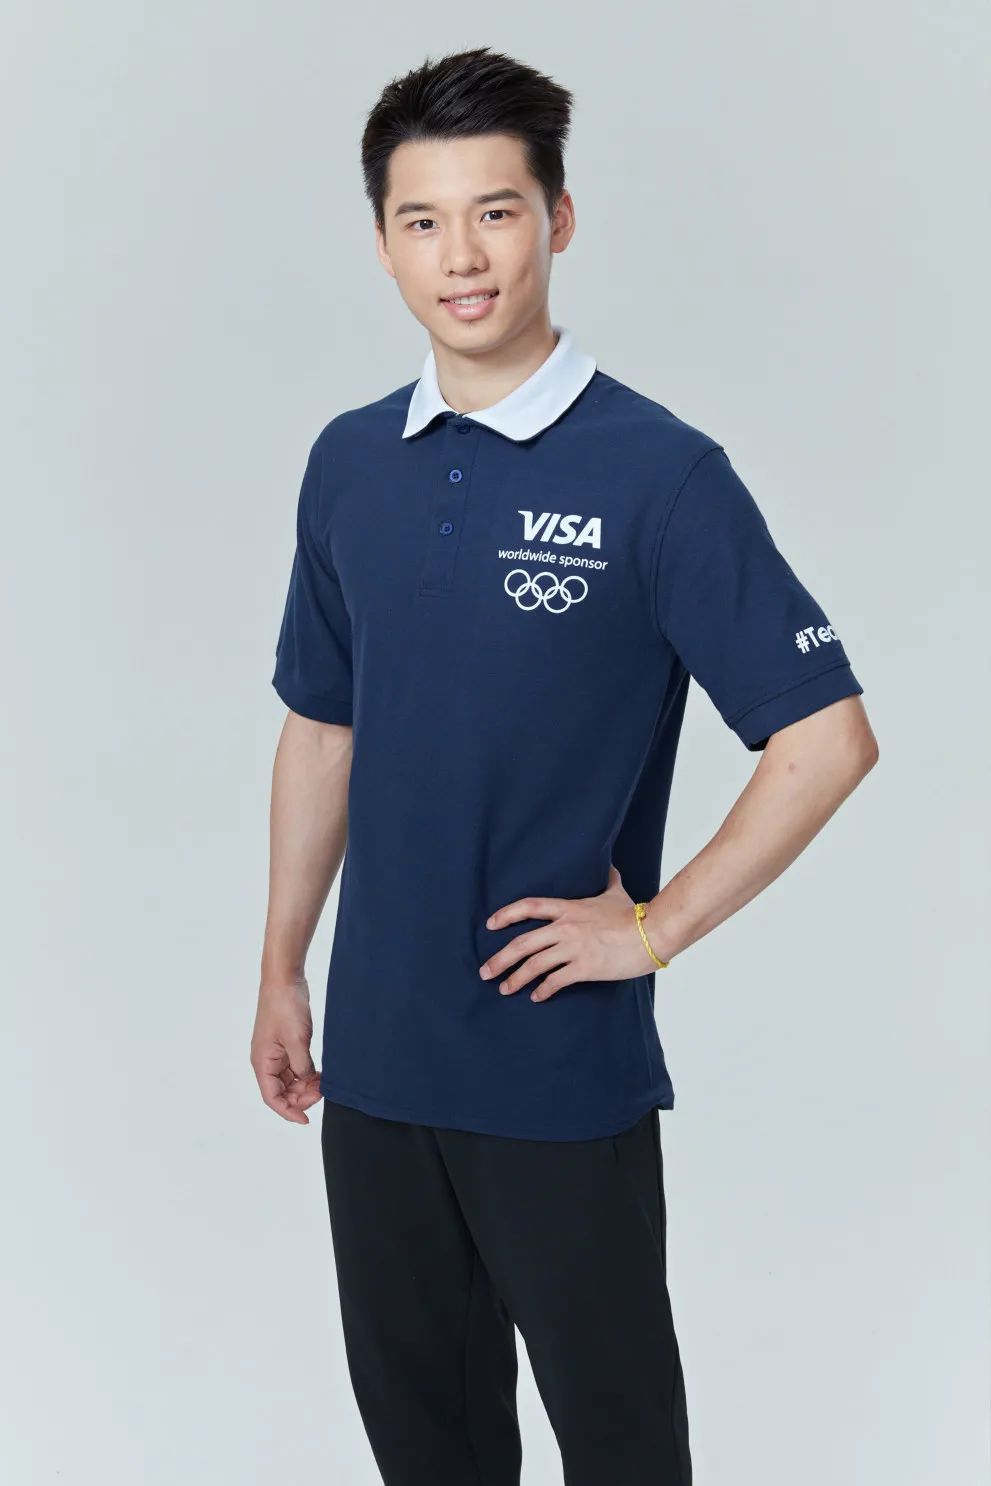 2020年东京奥运会和残奥会visa之队阵容揭晓,中国运动员马龙,谌龙等